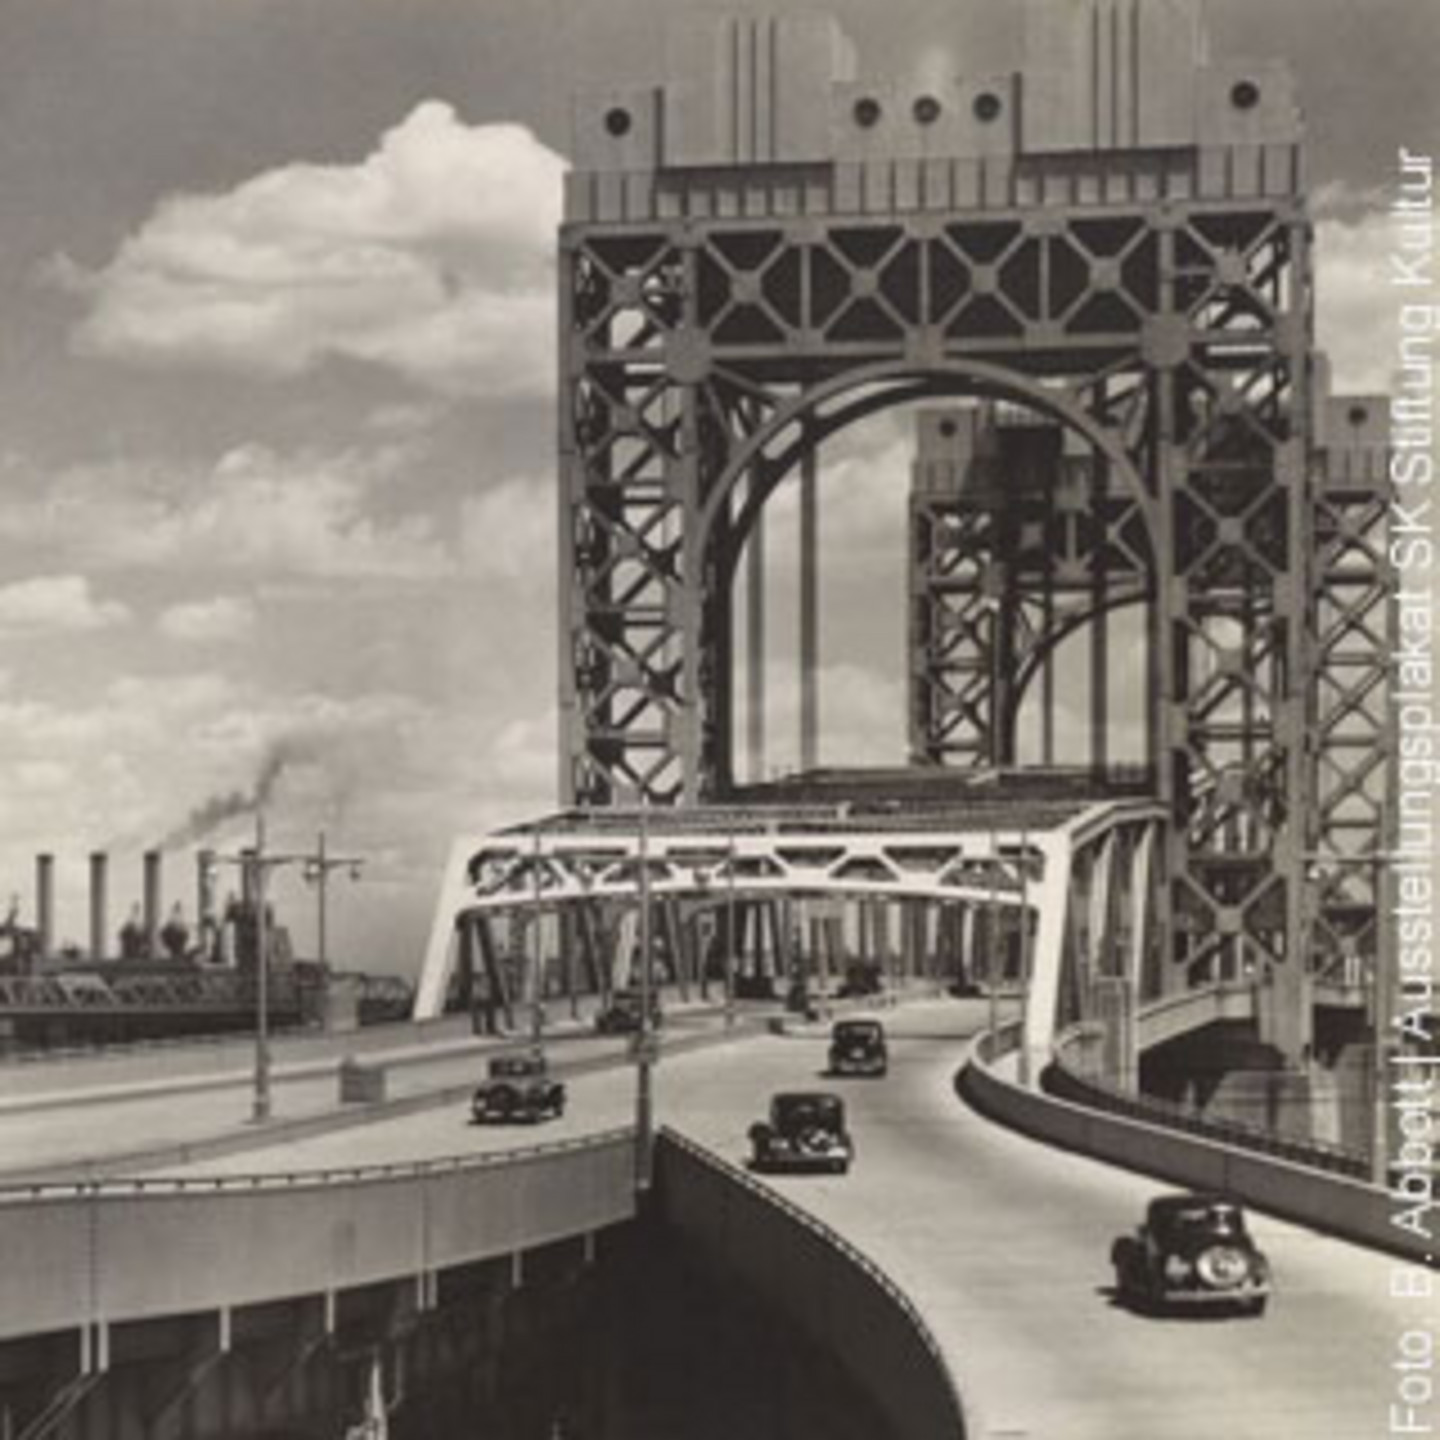 Historisches Foto von einer Brücke einer amerikanischen Stadt.